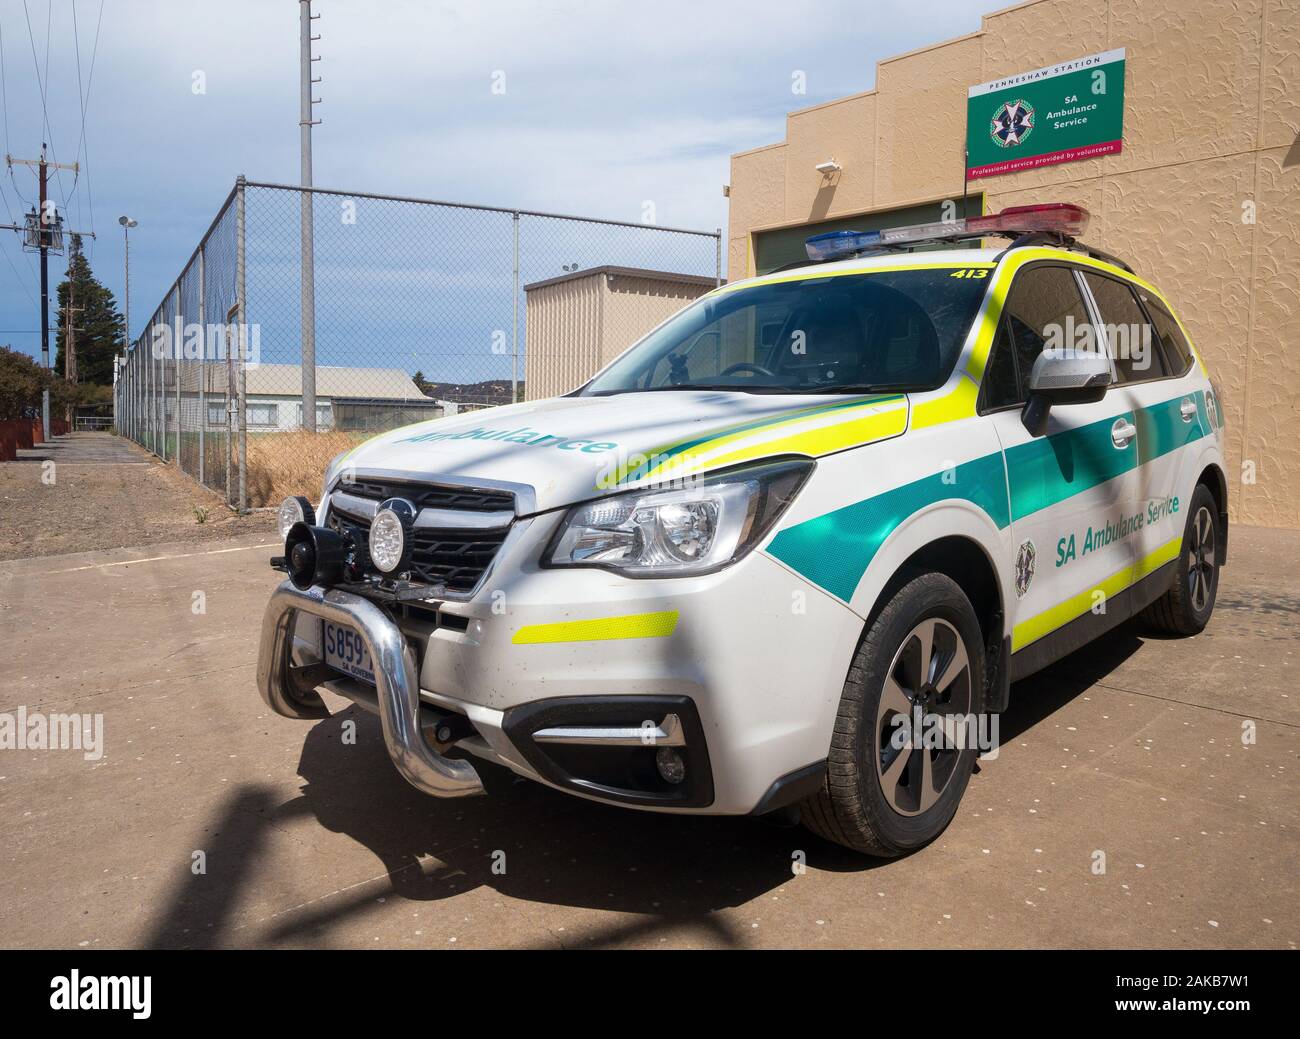 Vue d'une station-service d'ambulance de l'Australie du Sud avec véhicule à Penneshaw sur Kangaroo Island, Australie du Sud, Australie. Banque D'Images